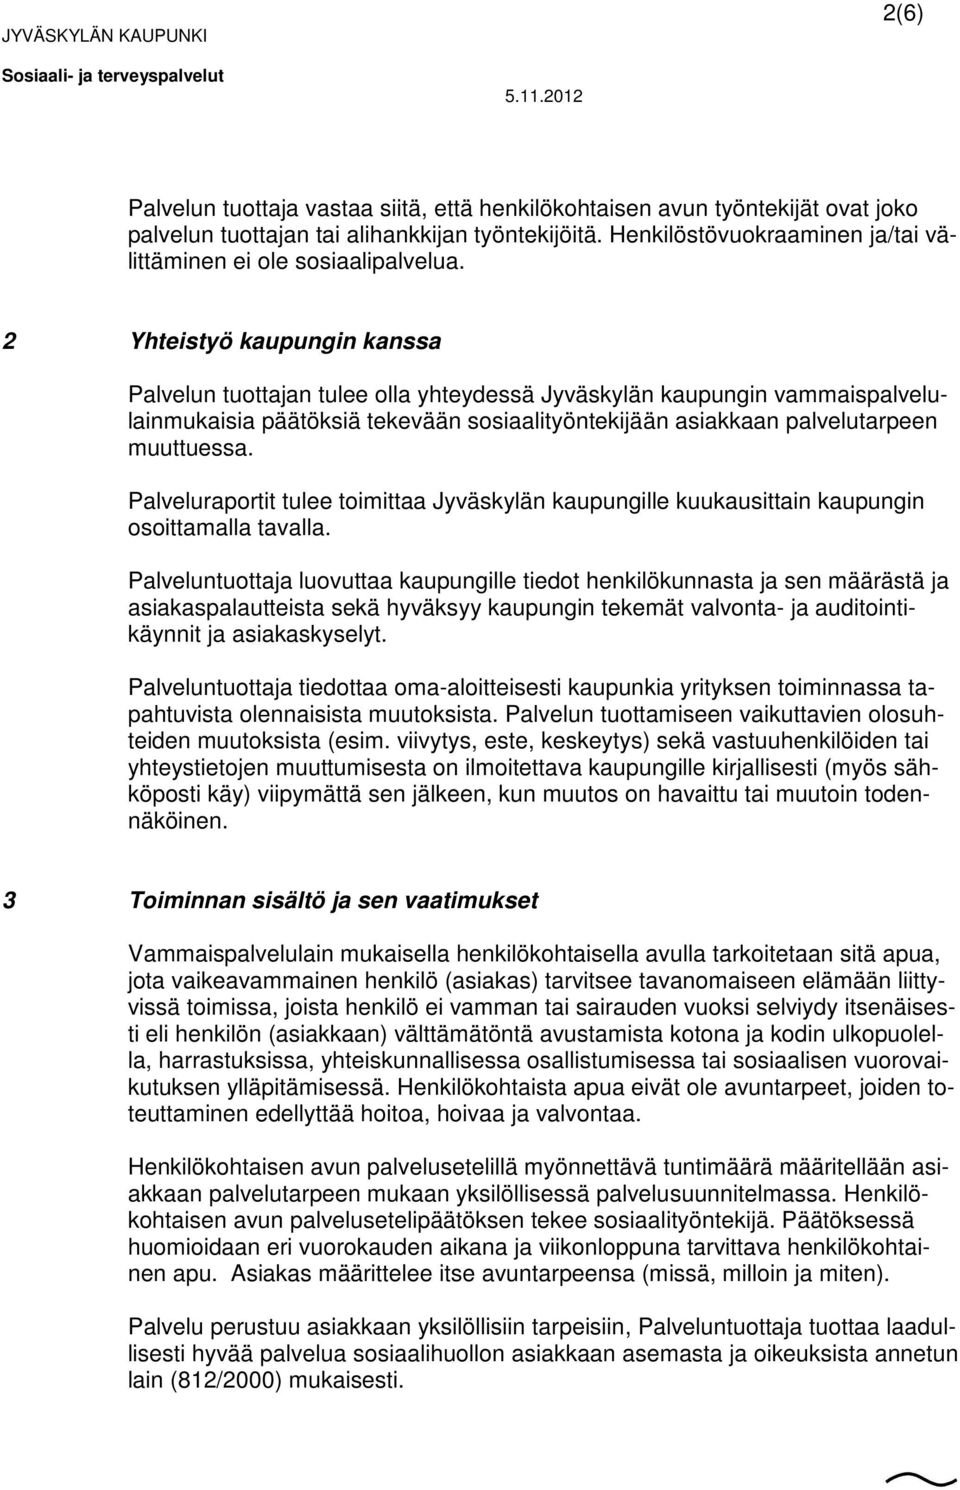 2 Yhteistyö kaupungin kanssa Palvelun tuottajan tulee olla yhteydessä Jyväskylän kaupungin vammaispalvelulainmukaisia päätöksiä tekevään sosiaalityöntekijään asiakkaan palvelutarpeen muuttuessa.